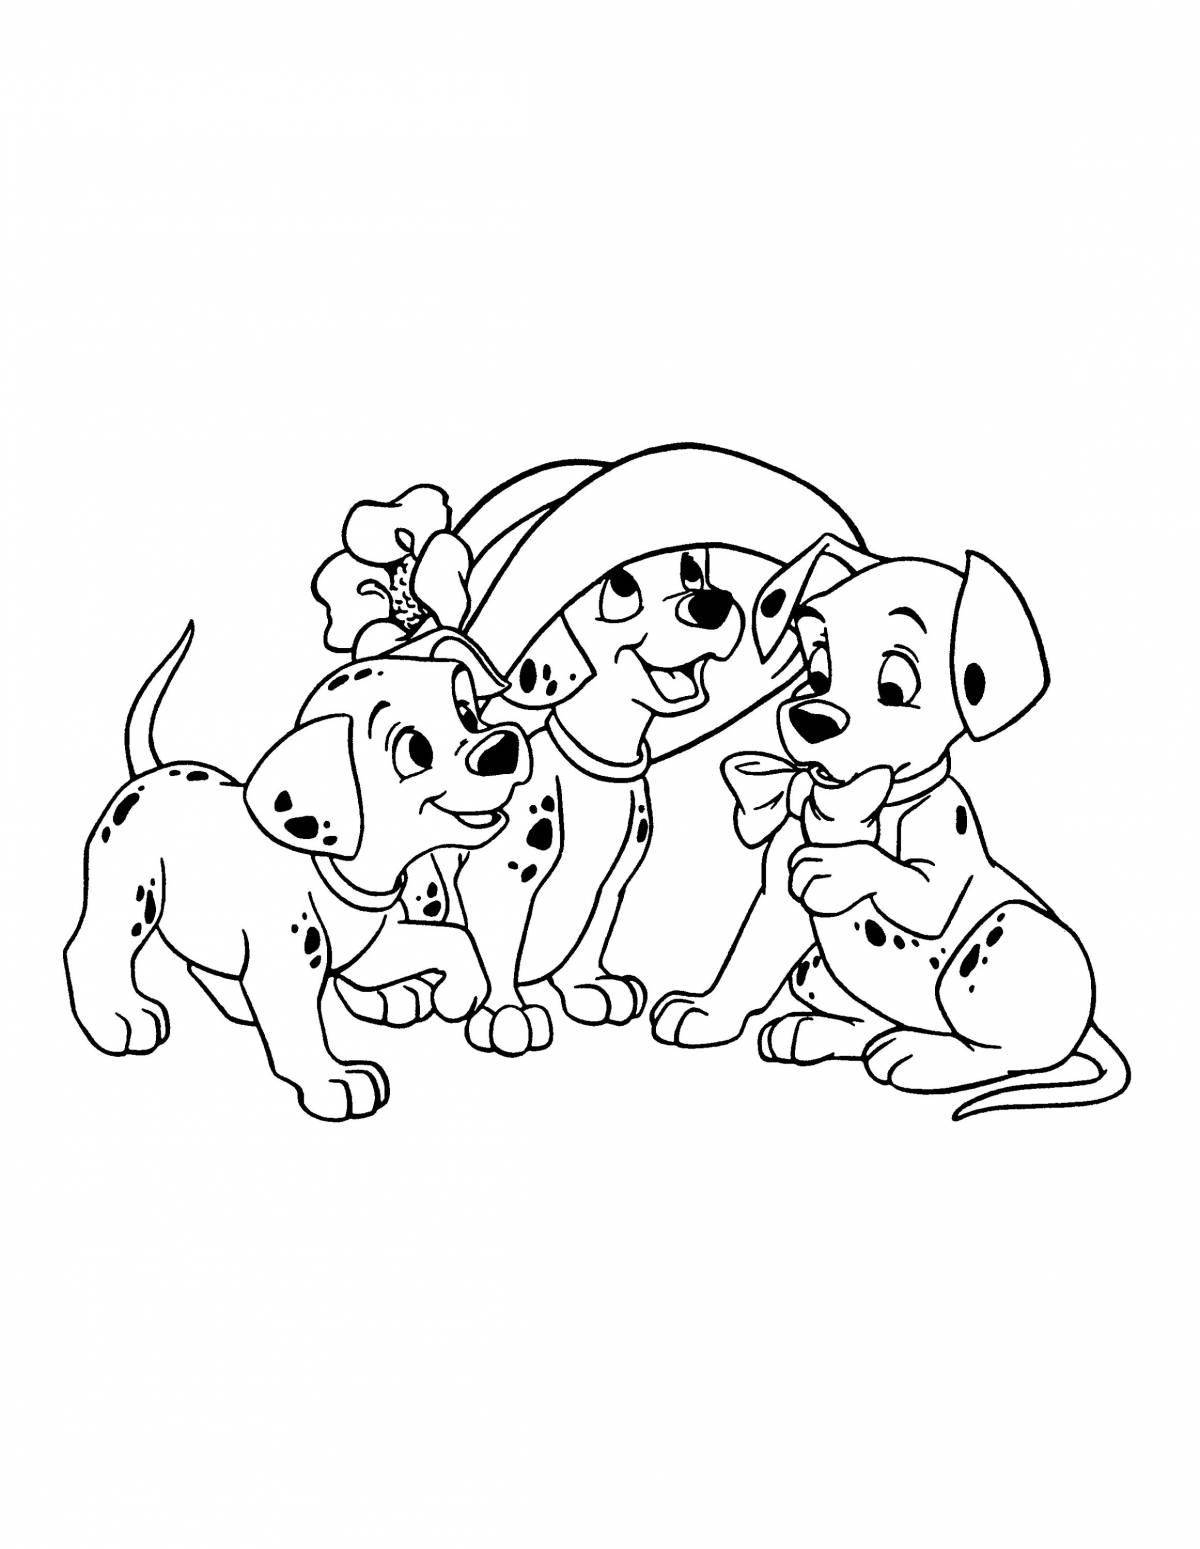 Страница раскраски общительной собачьей семьи